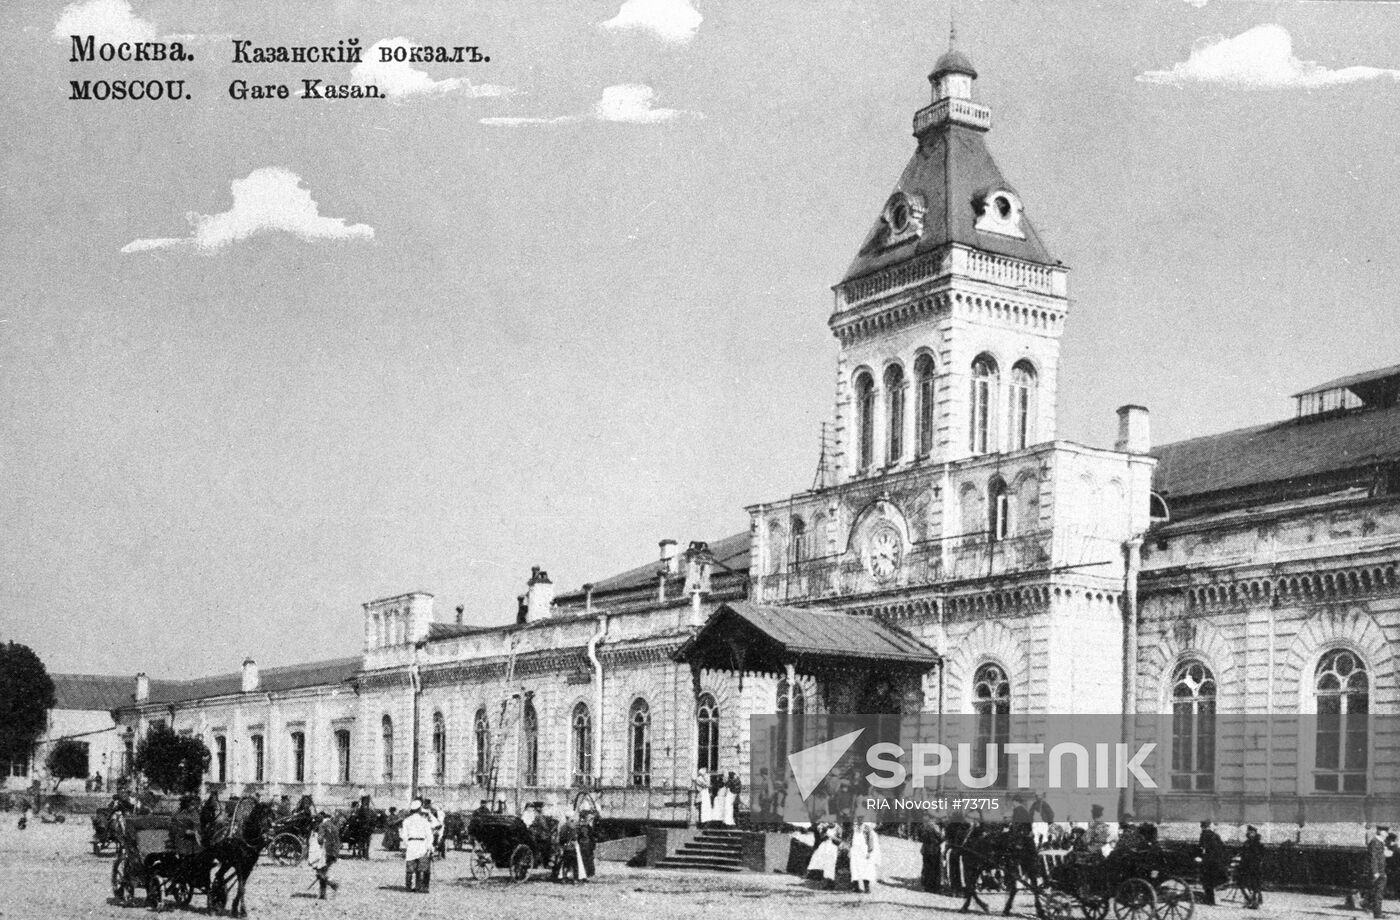 Kazan Railroad Terminal Building 